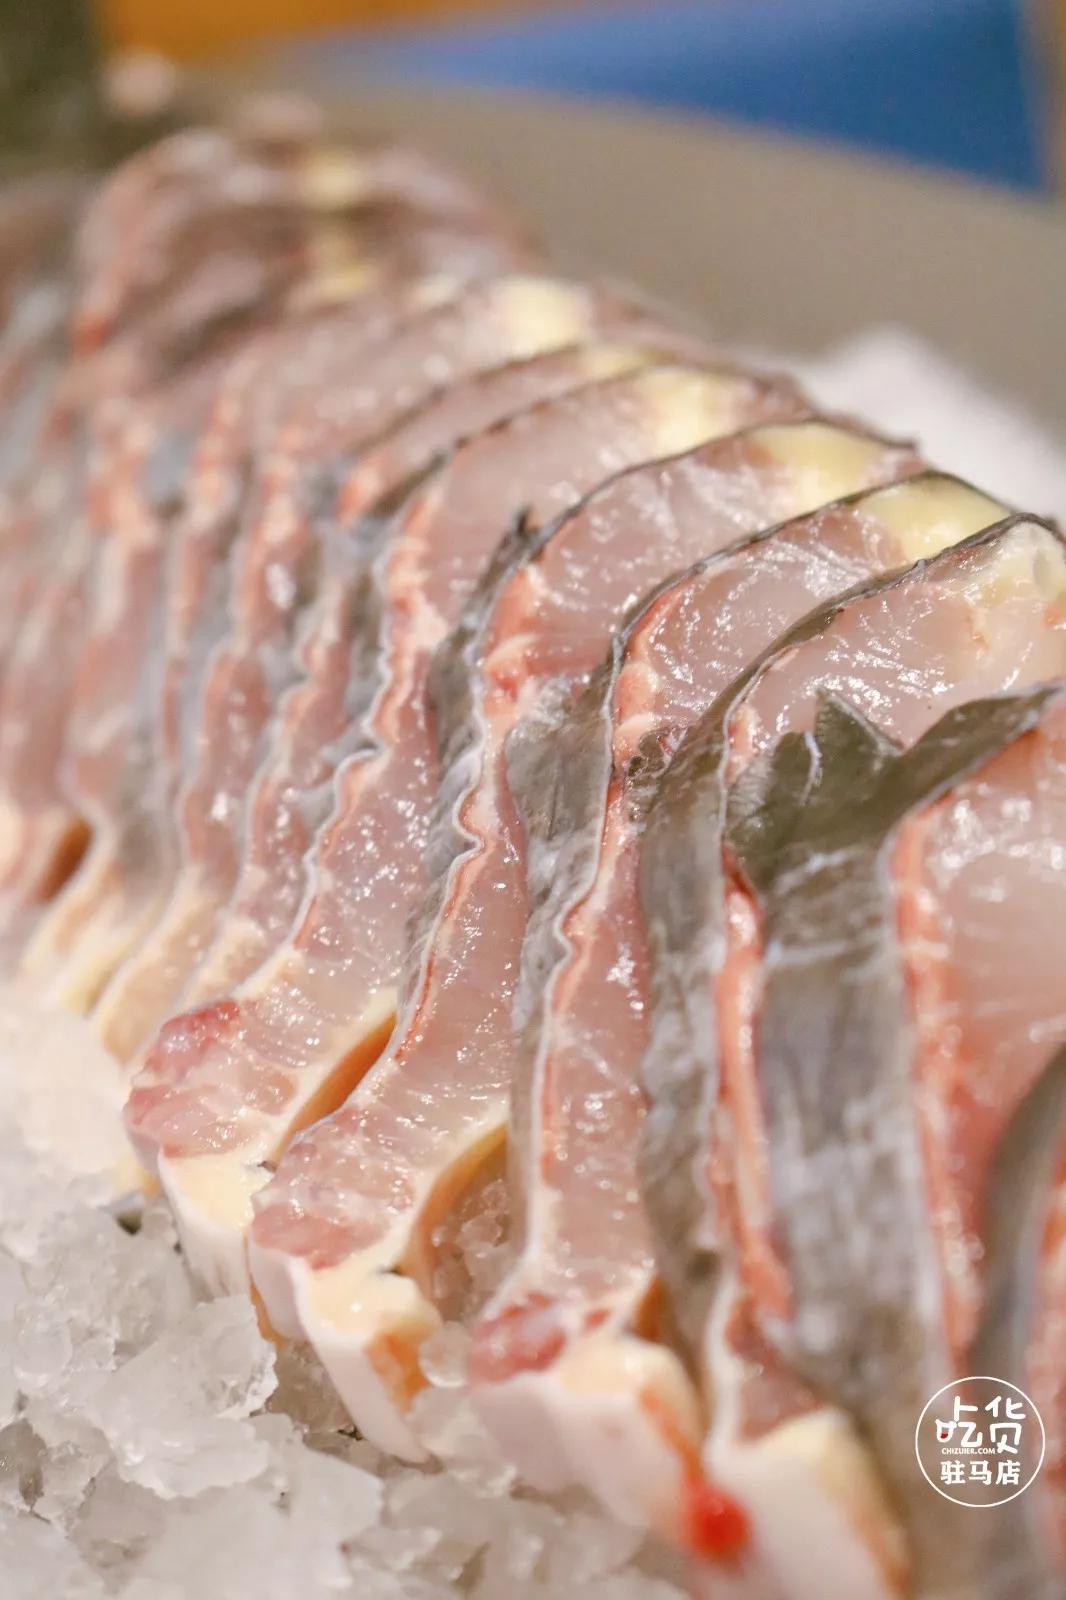 处理过的鱼肉便可直接上桌,鸭嘴鲟表皮光滑无鳞,通身一根龙骨直连鸭嘴